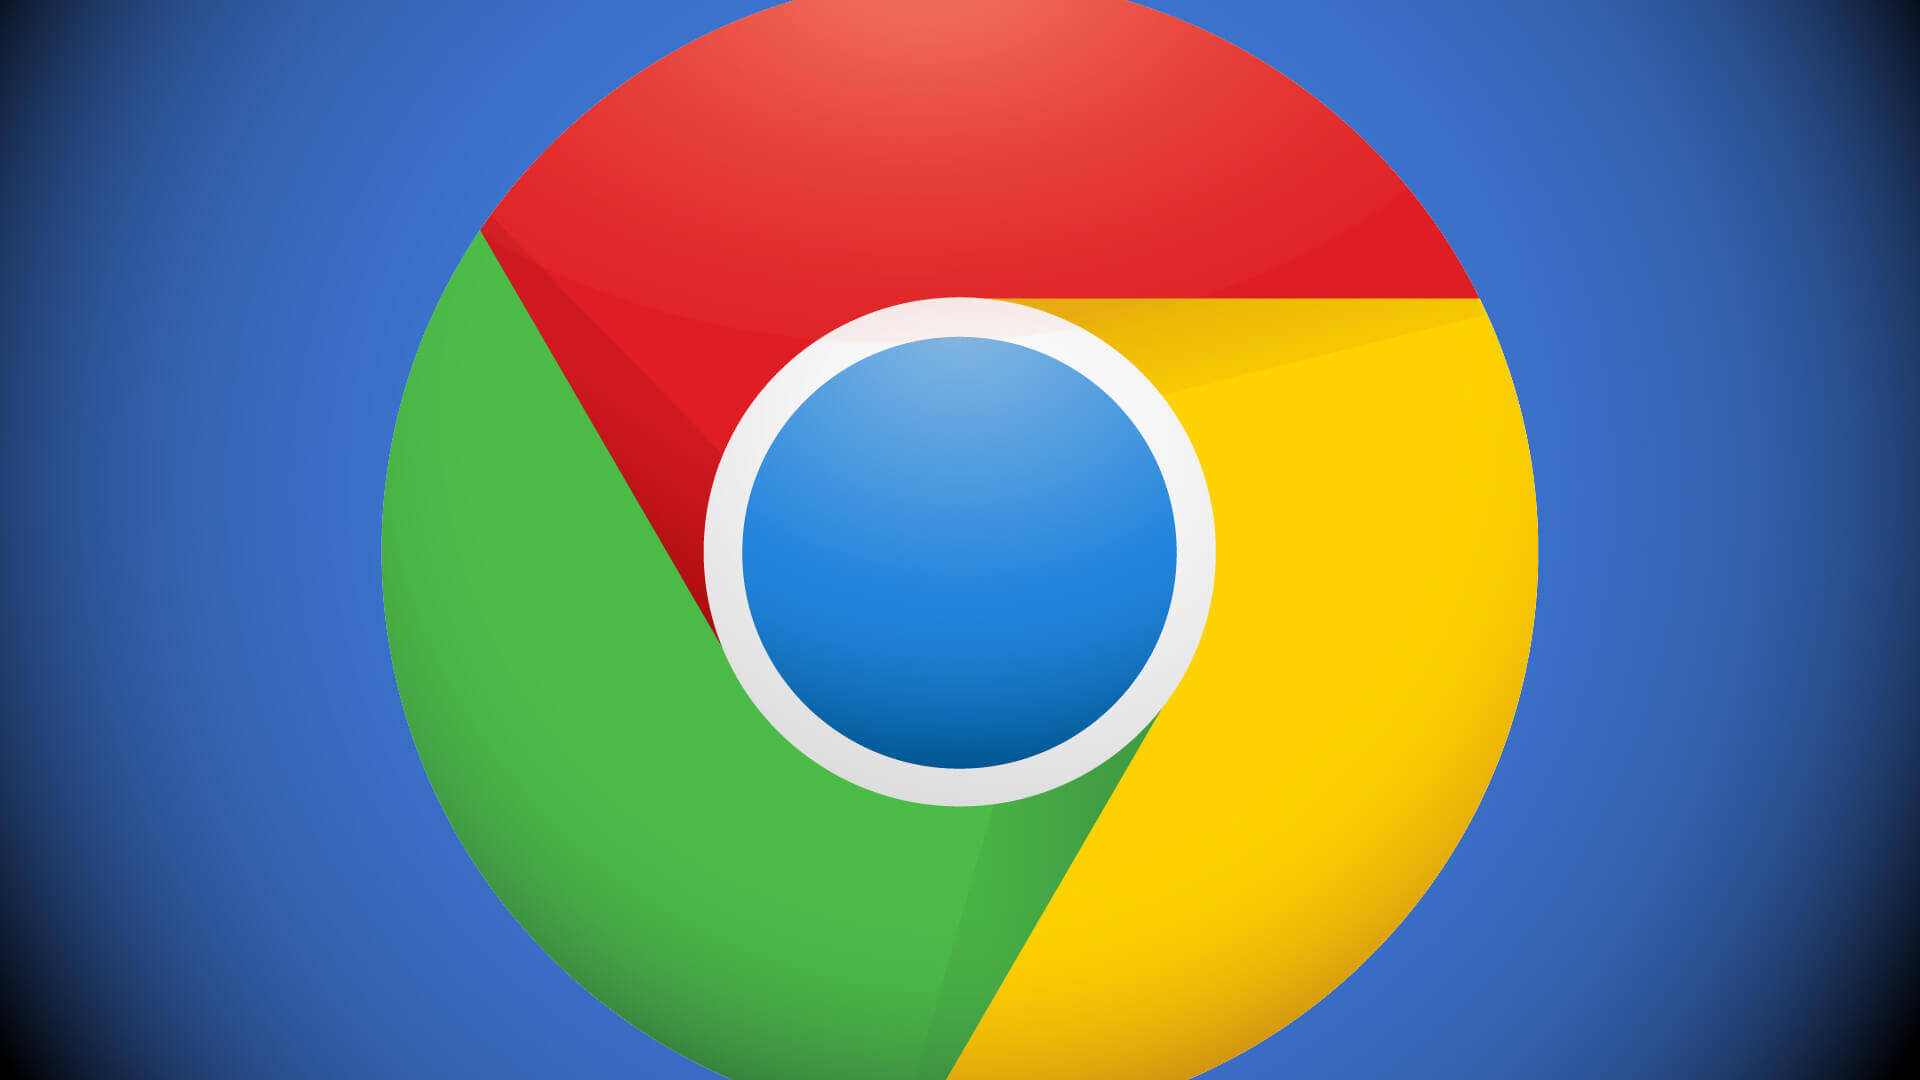 Ajo se çfarë ka bërë Chrome së fundmi, mund të jetë arsye për të kaluar në Firefox?